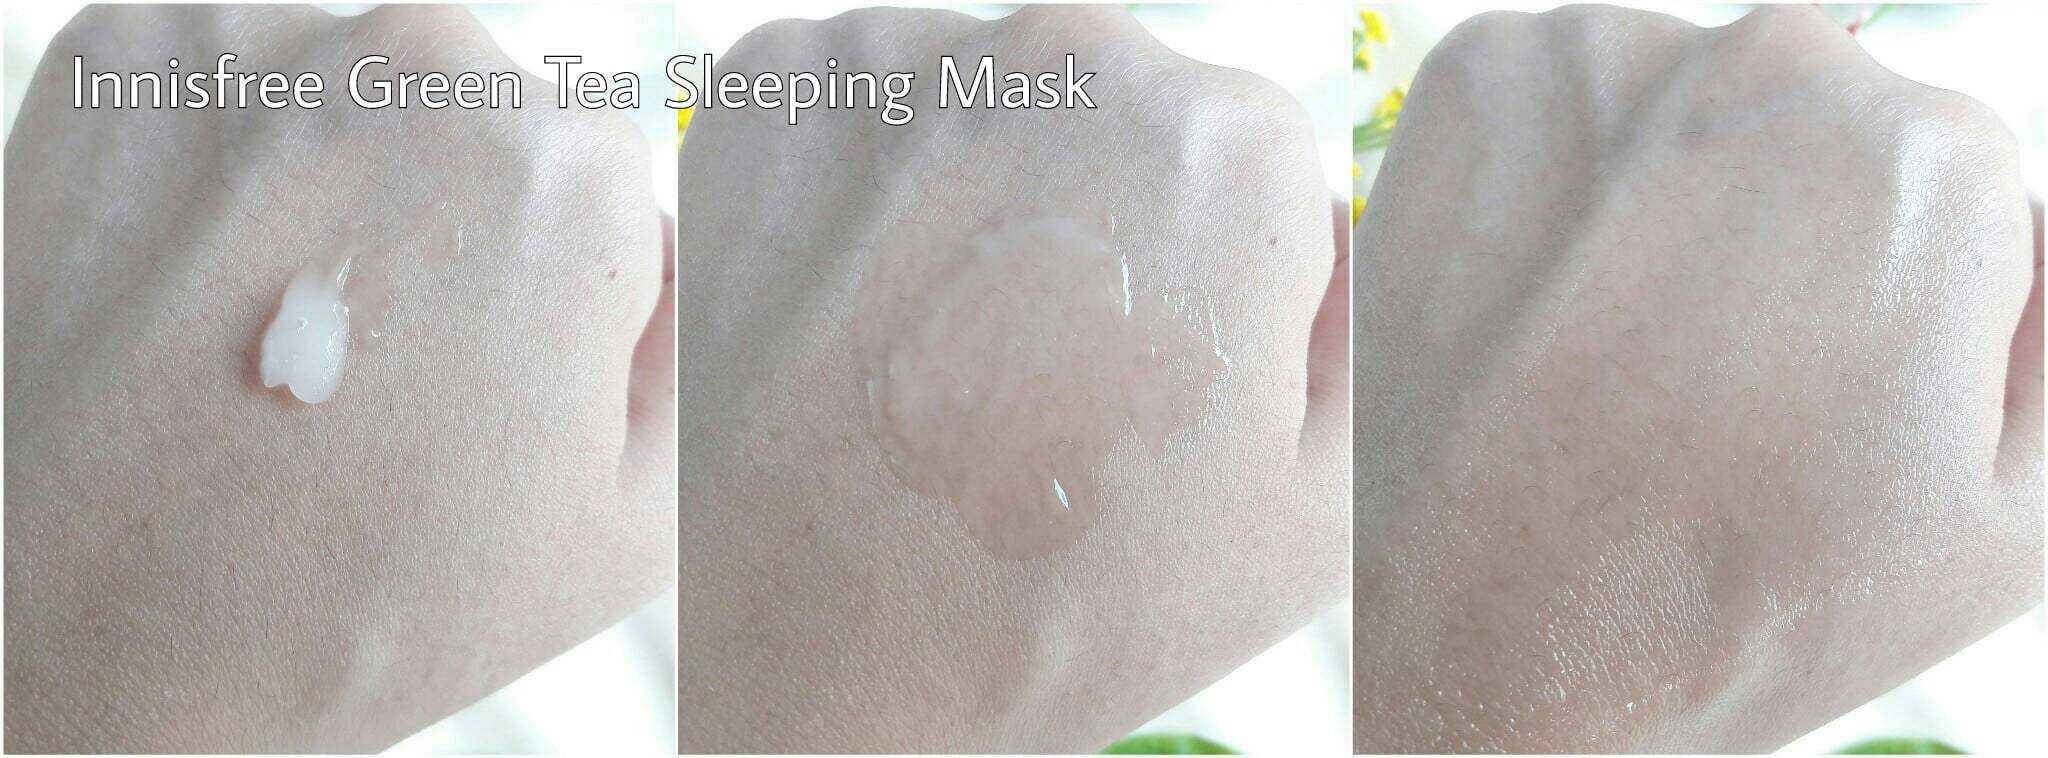 InnisFree Green Tea Sleeping Mask